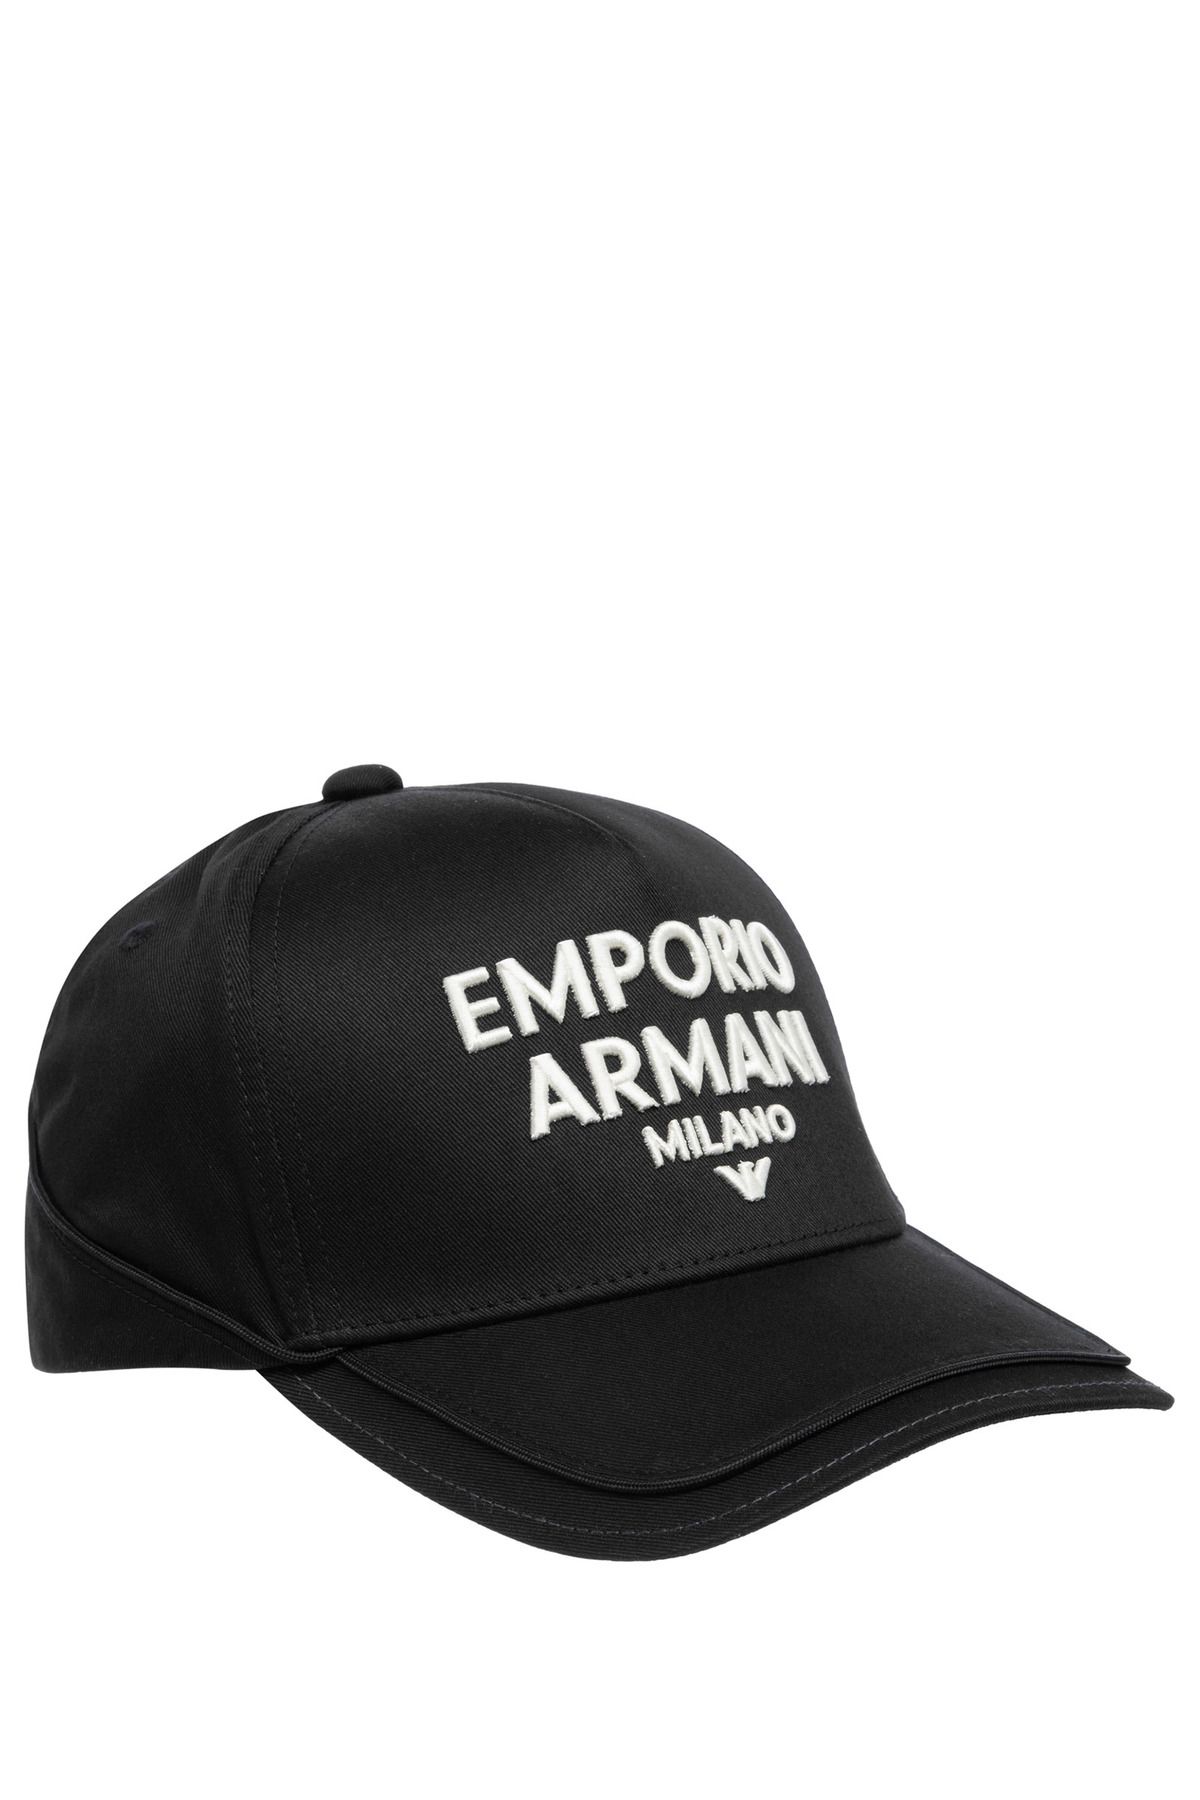 Emporio Armani Erkek Düz Renk Logolu Lacivert Spor Şapka 627475 4R578-00020